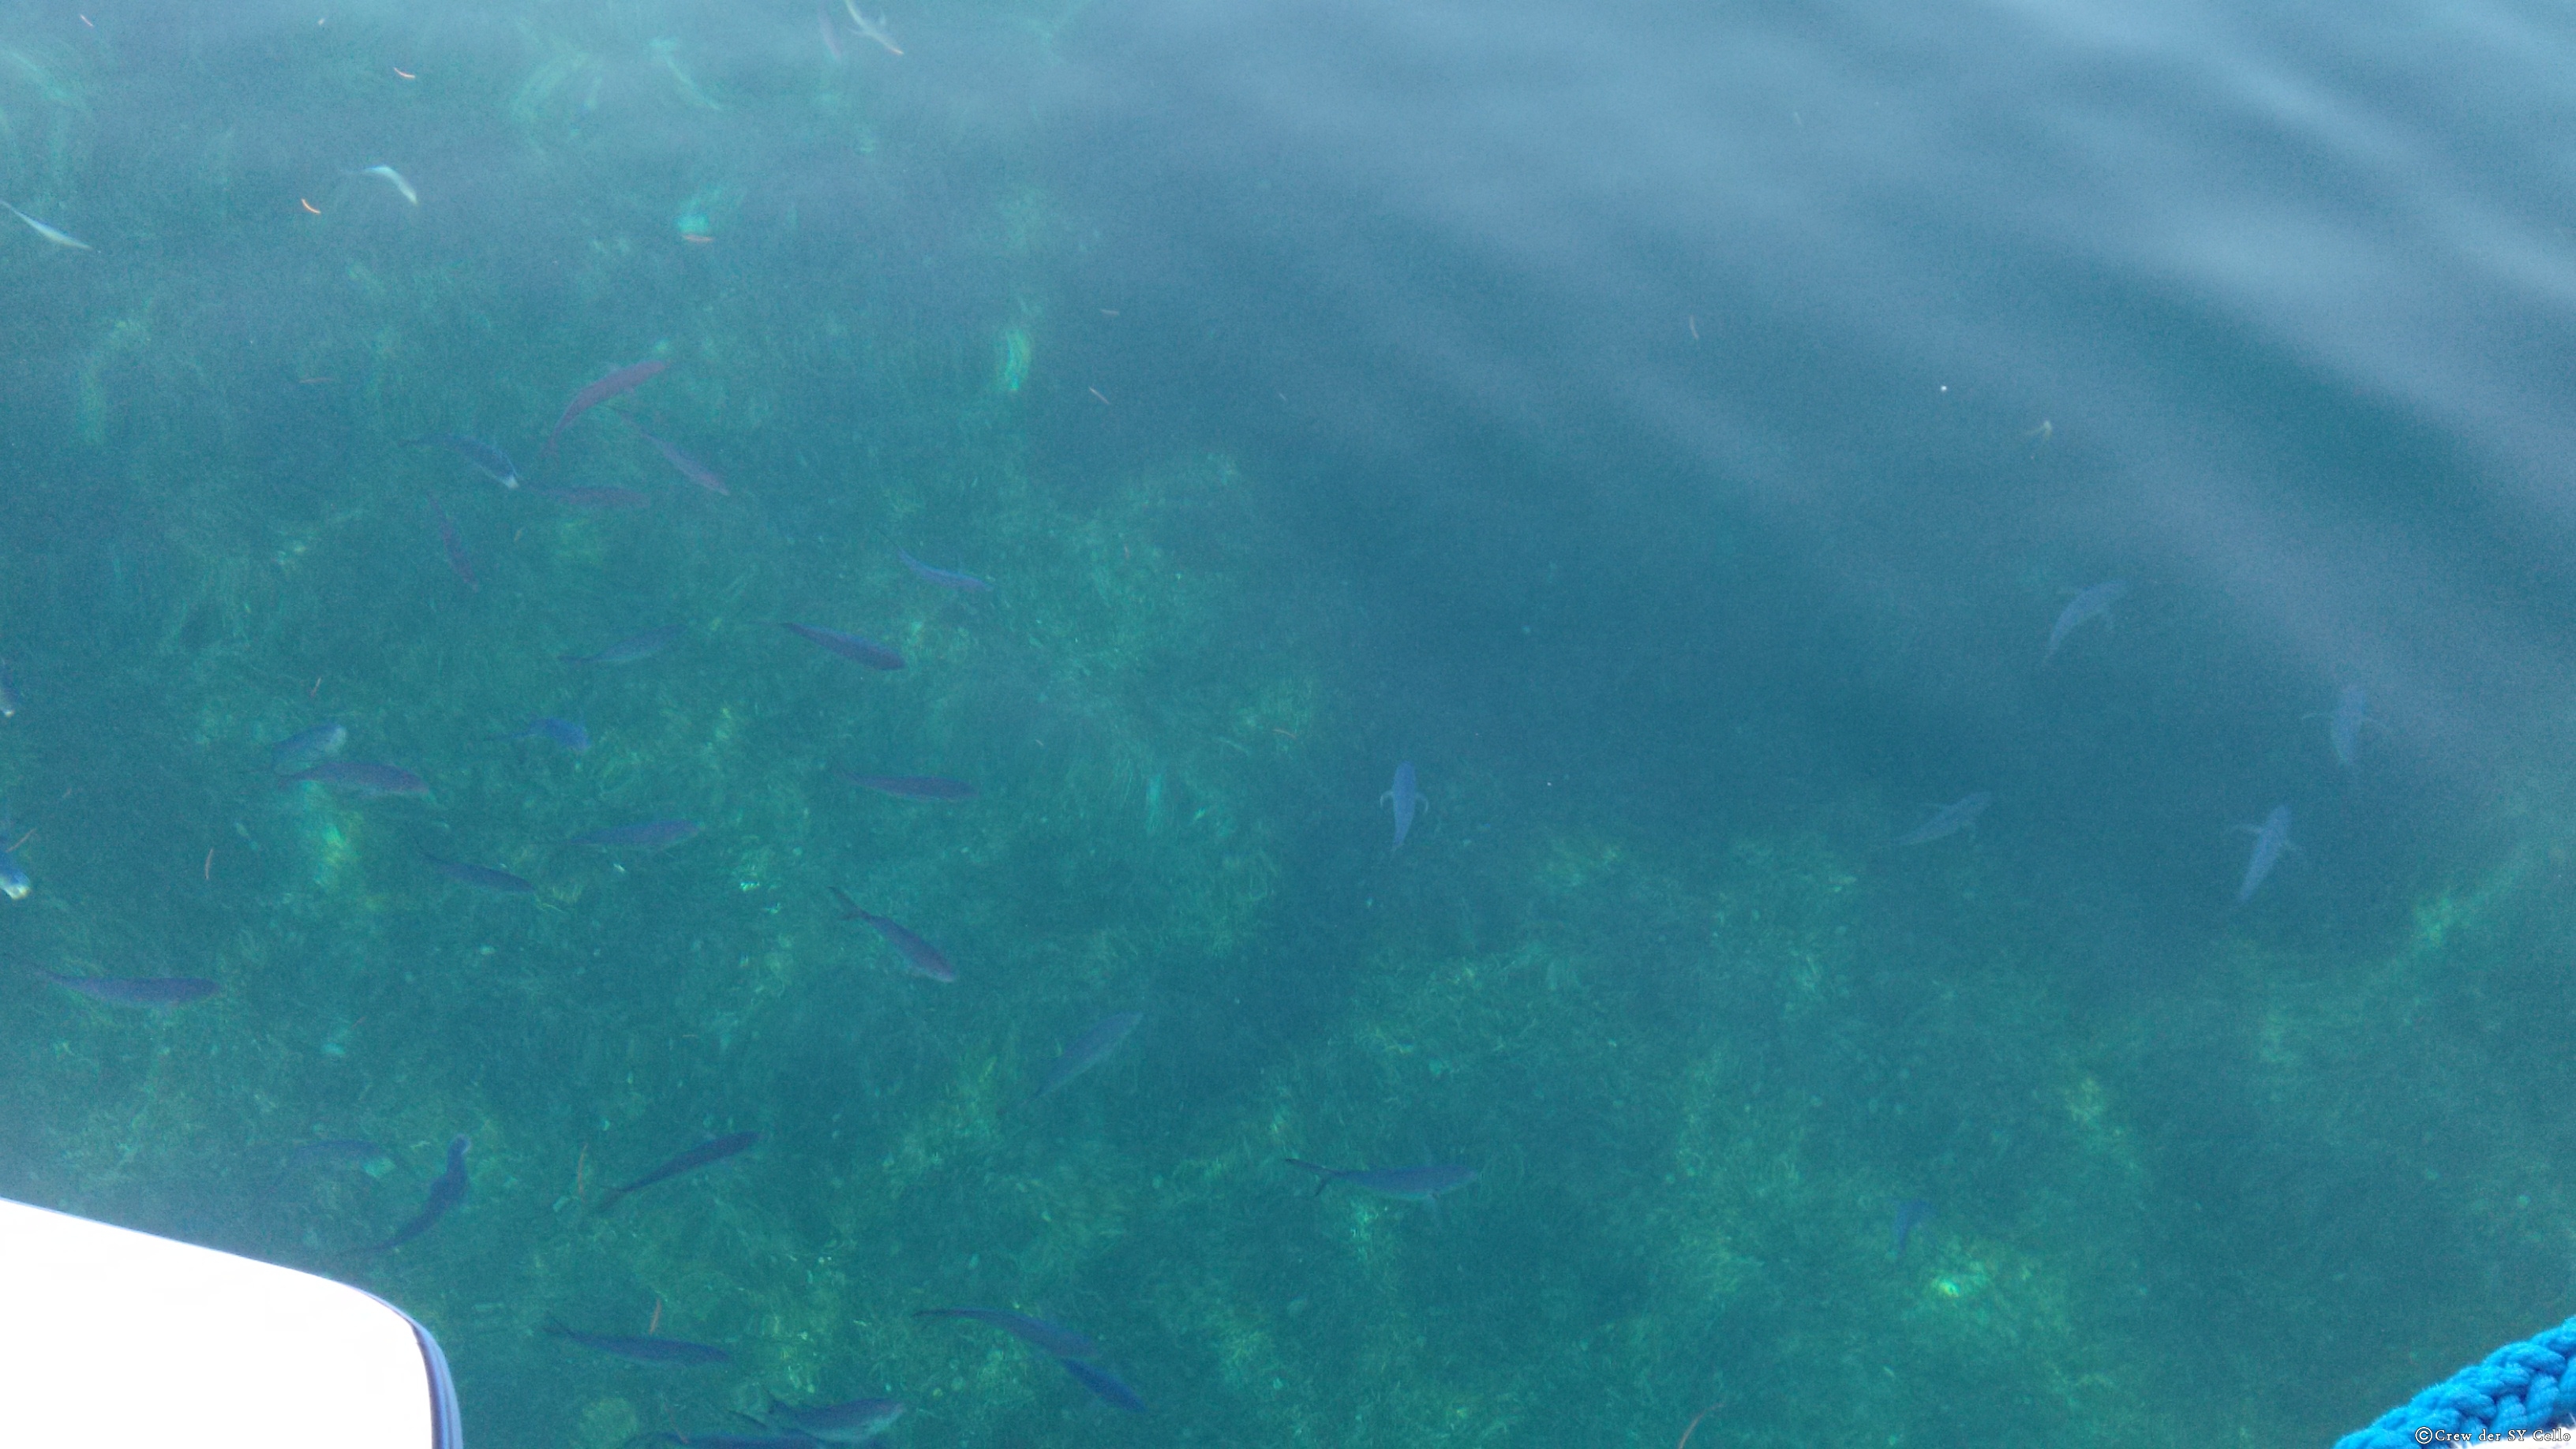 6:30, kristallklares Wasser. Die Fische erwarten die Fütterung. Grande Anse, Martinique.